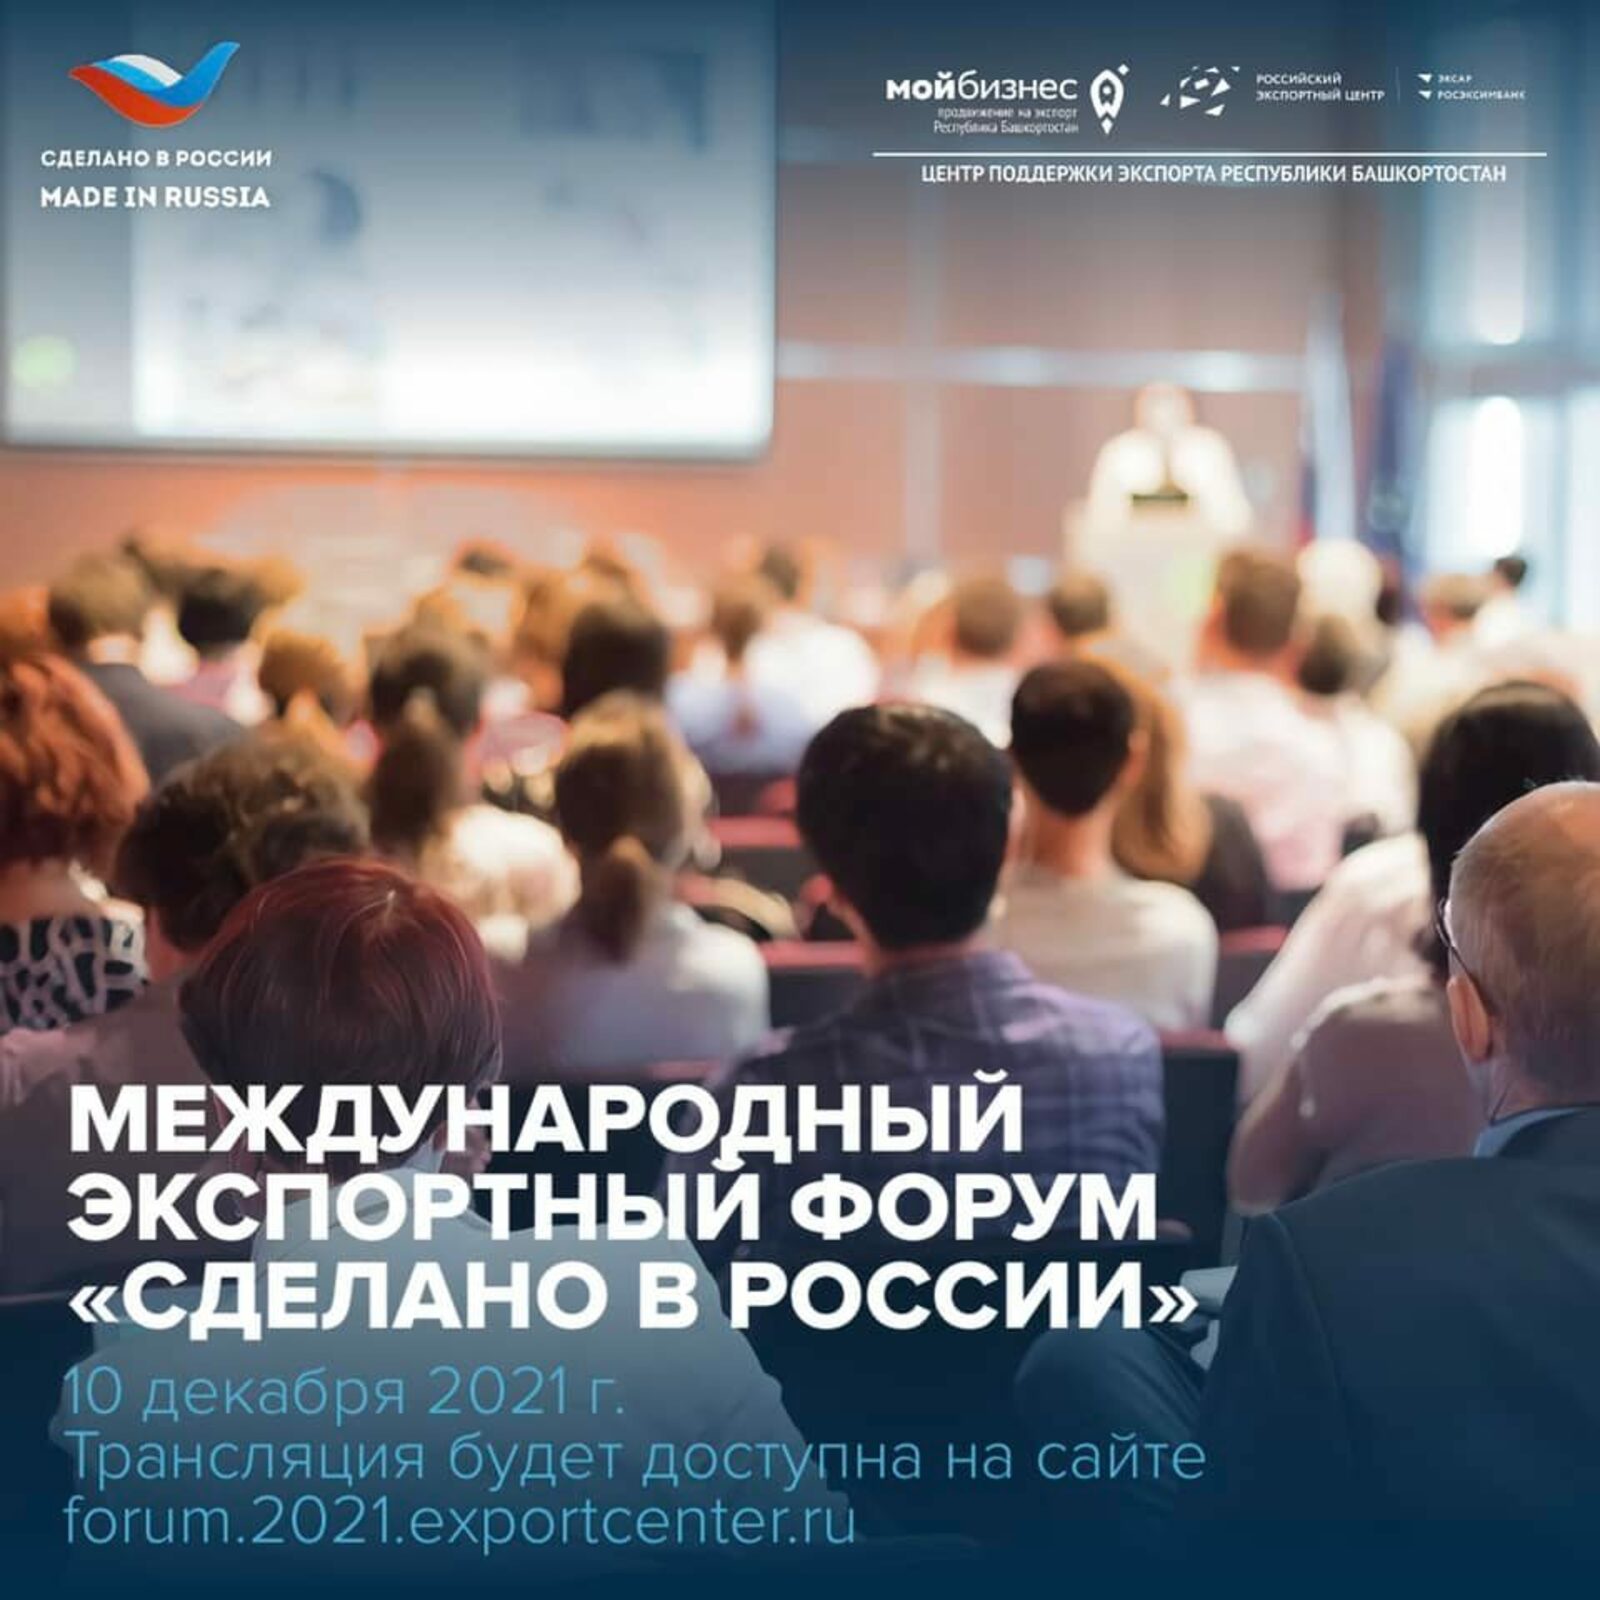 Нацпроект "Международная кооперация и экспорт". 10 декабря в Москве пройдет Международный экспортный форум «Сделано в России»